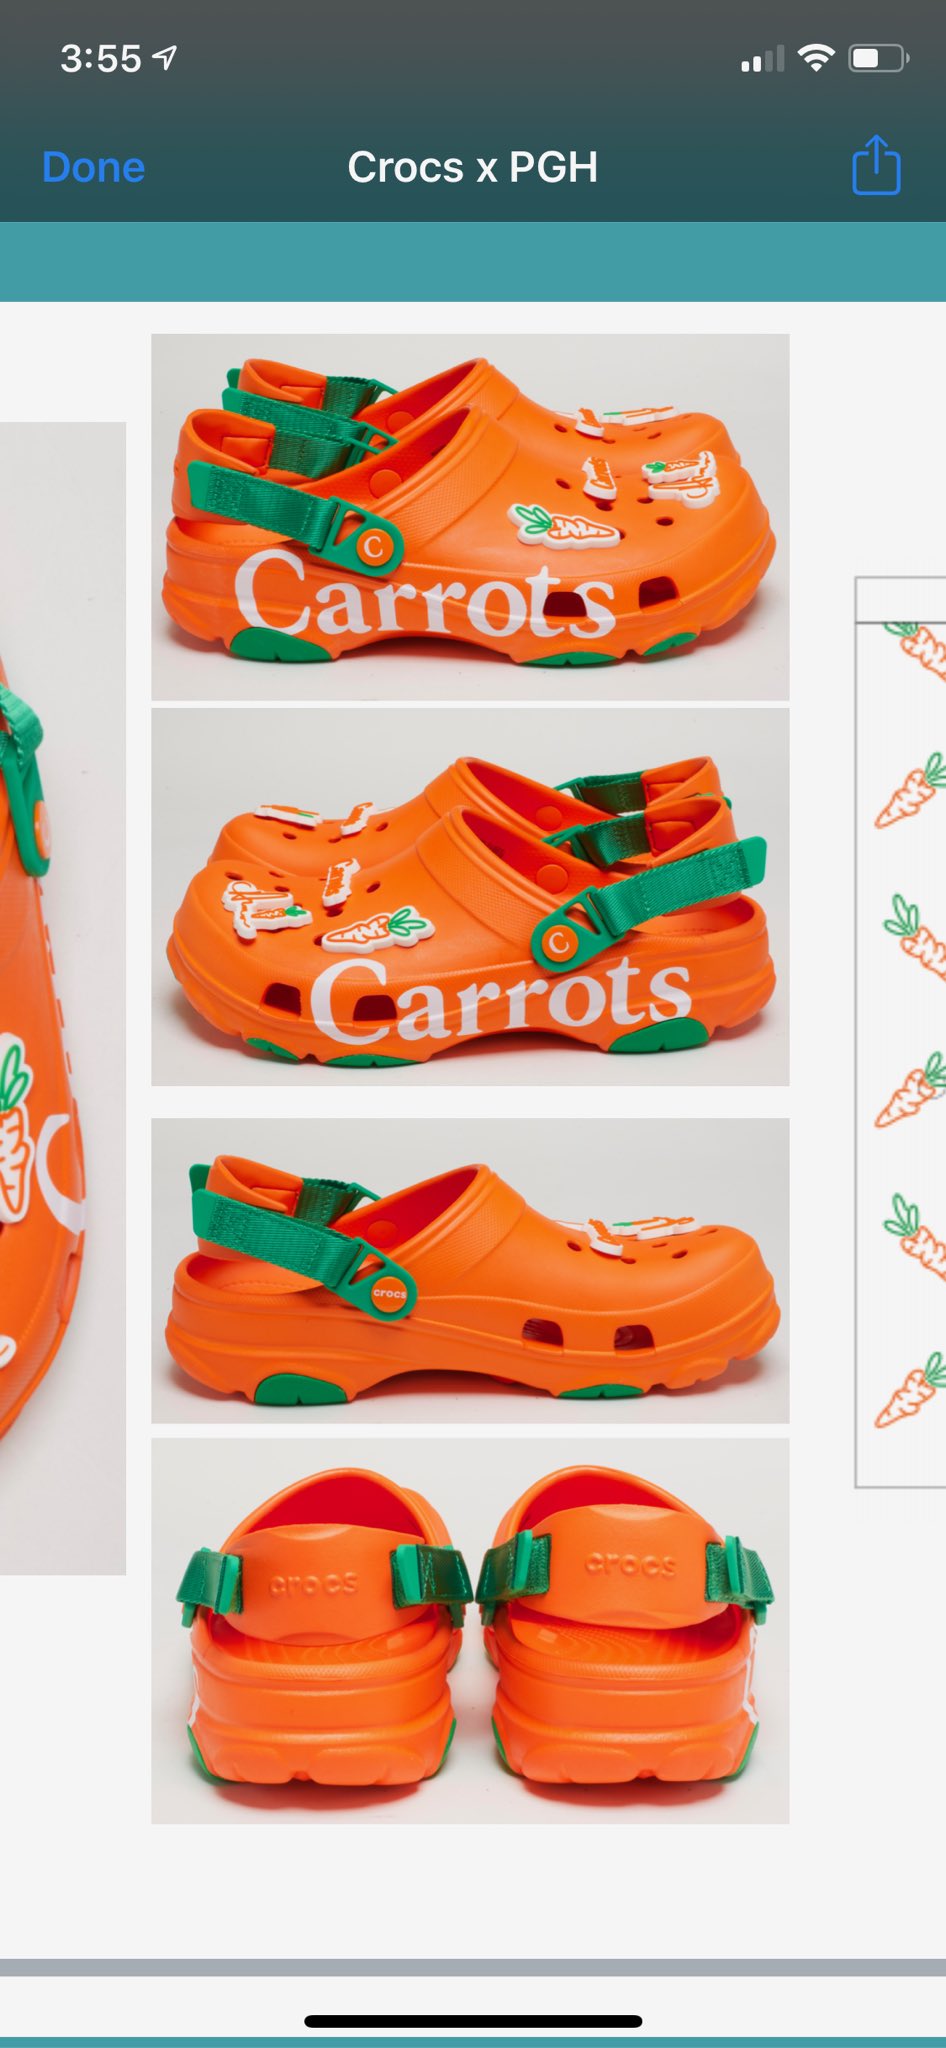 carrots crocs collab